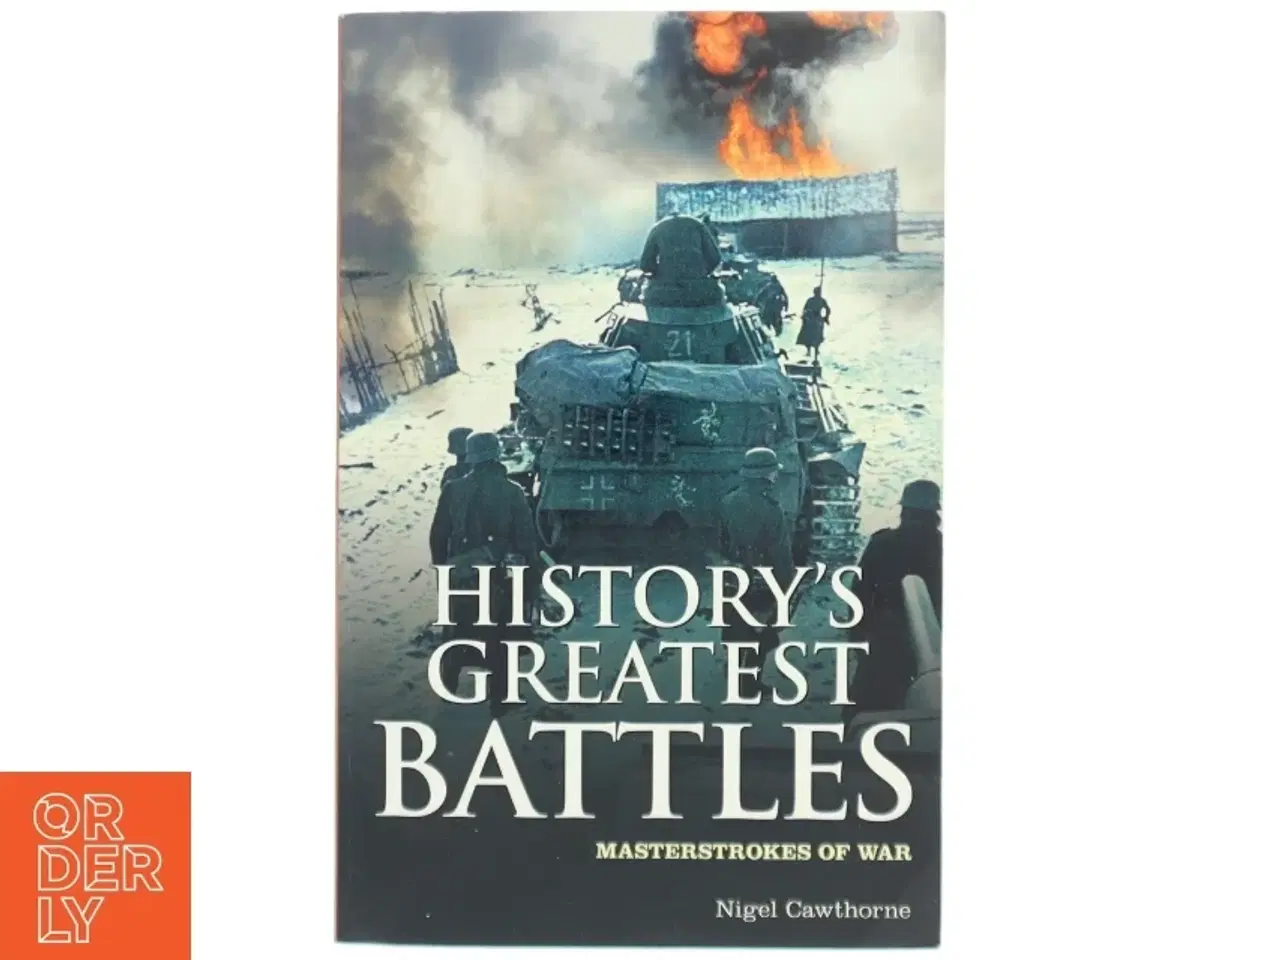 Billede 1 - History's greatest battles : masterstrokes of war af Nigel Cawthorne (1951-) (Bog)